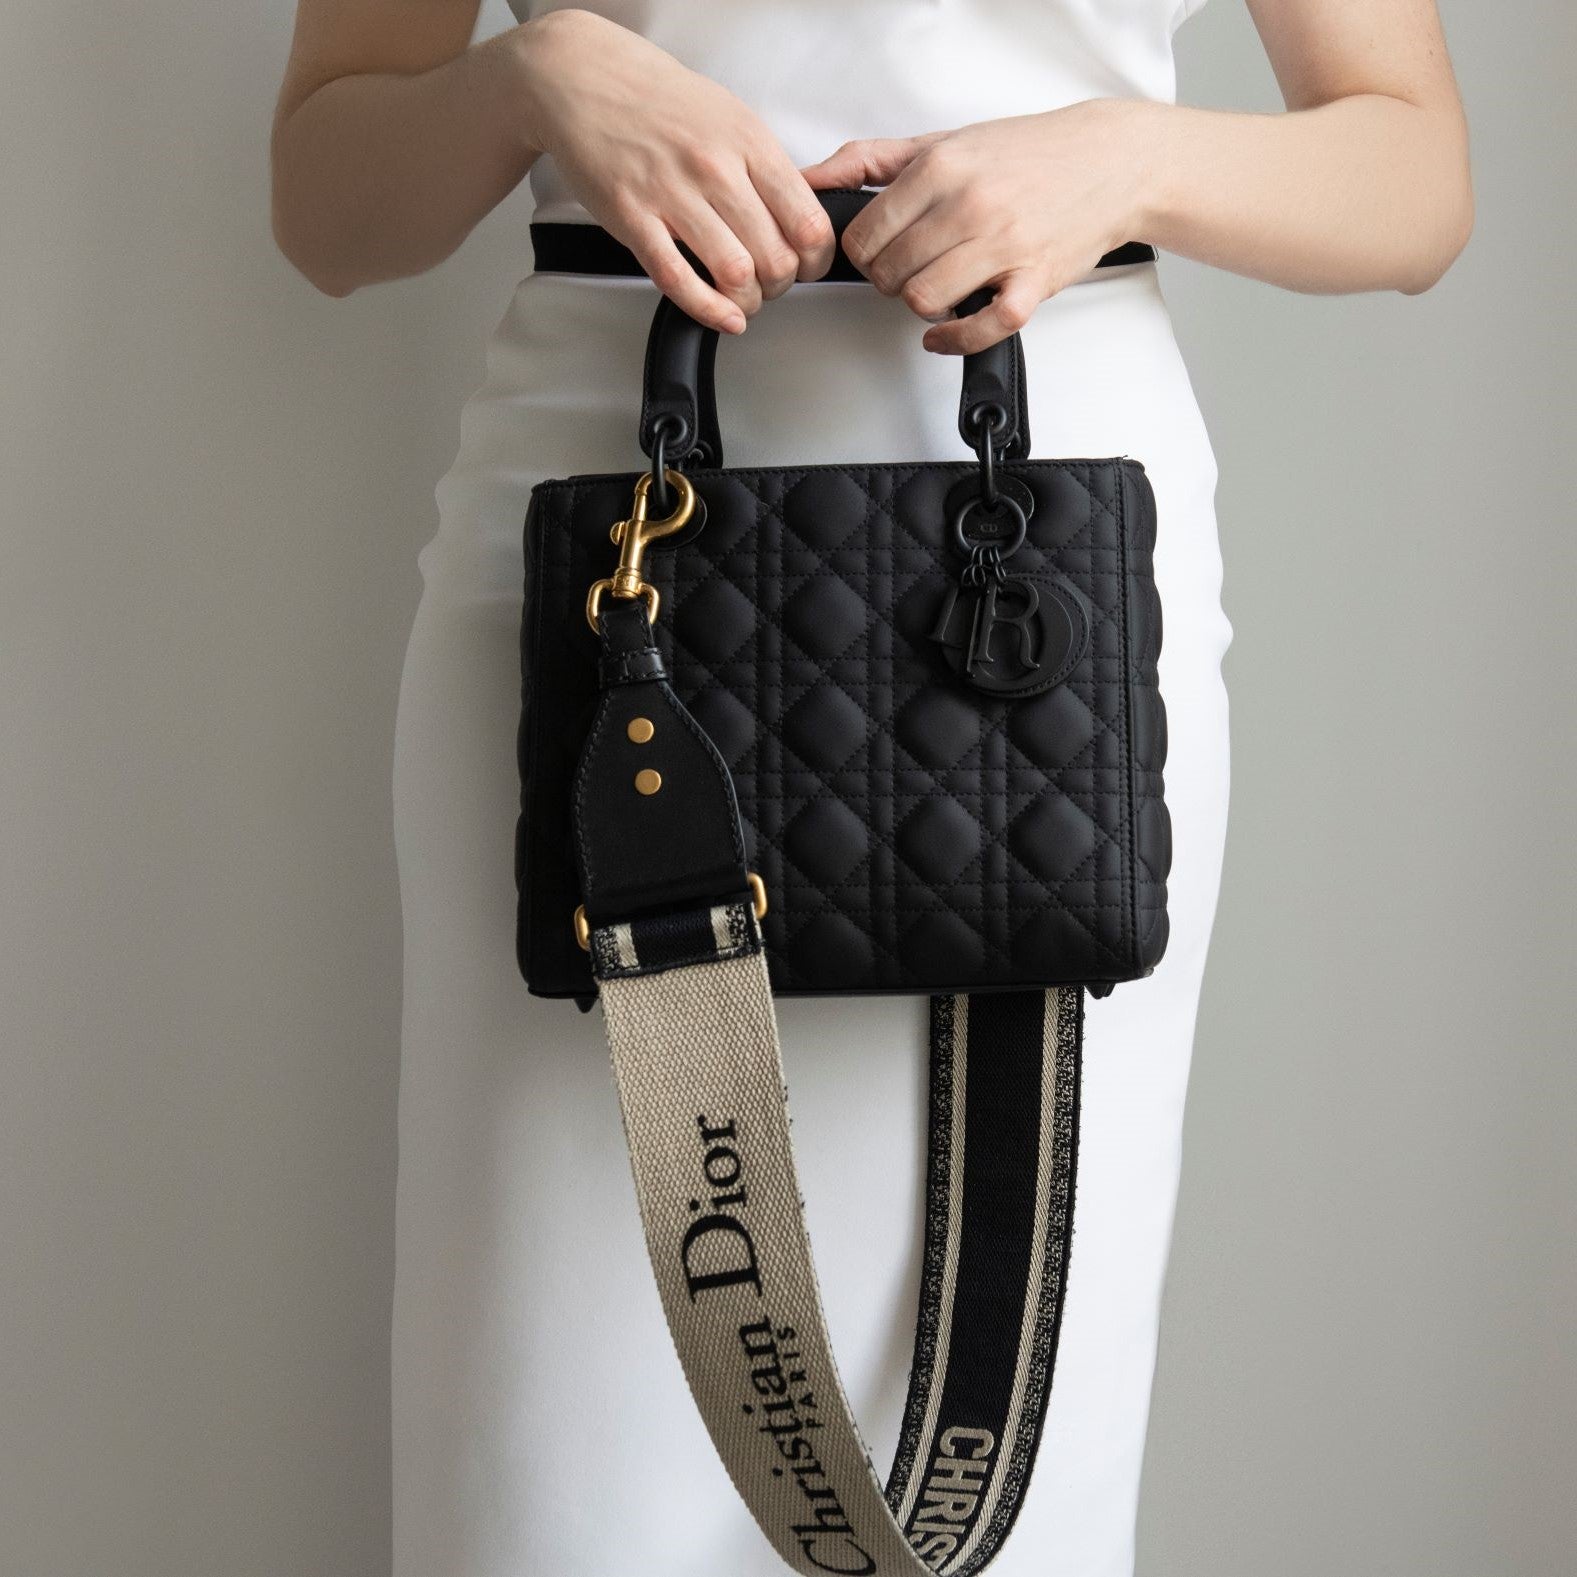 lady dior bag strap